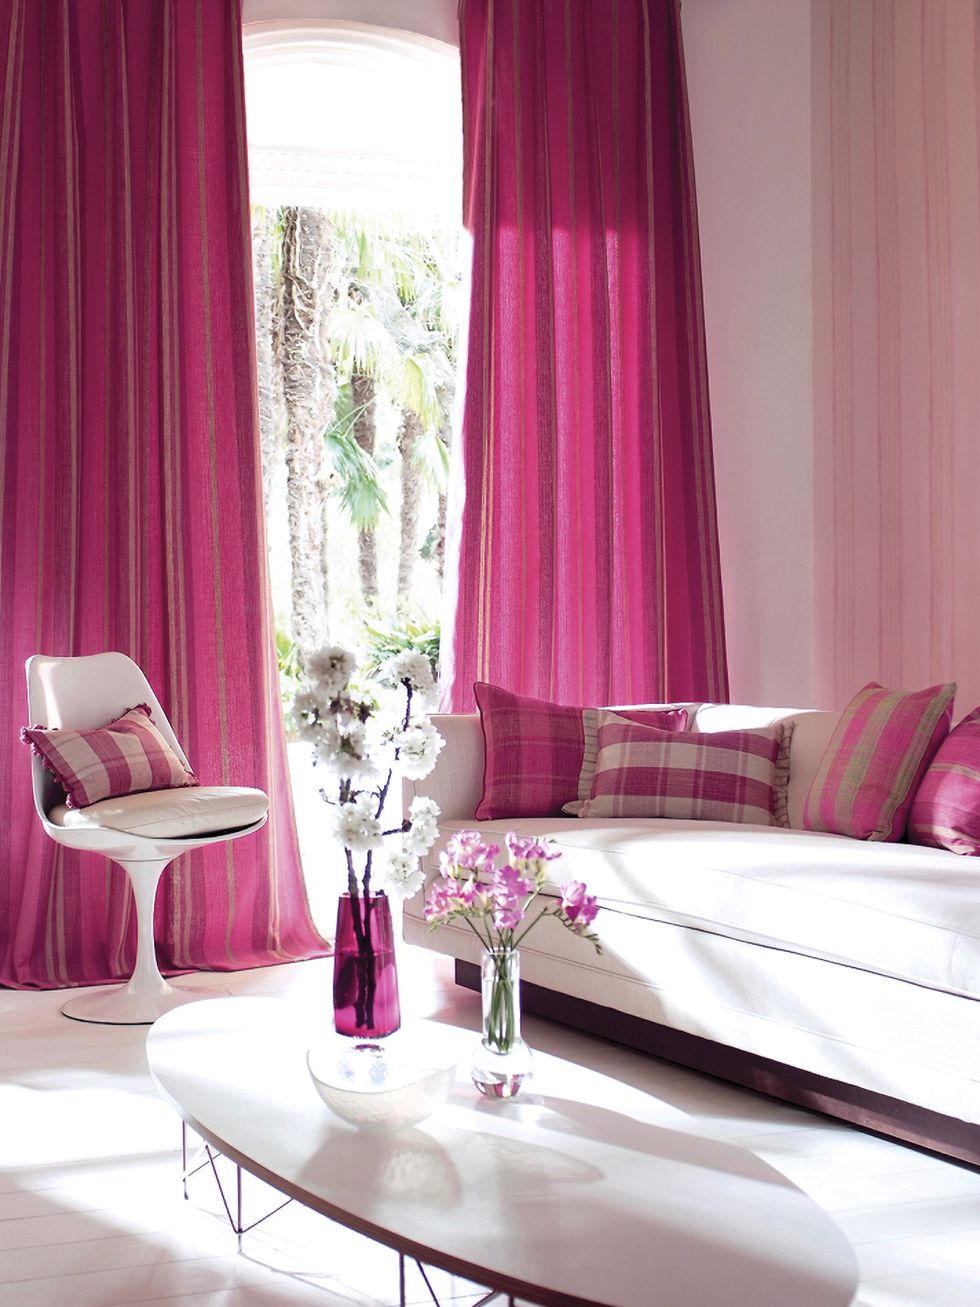 Interior design, Room, Textile, Furniture, Table, Purple, Pink, Window treatment, Interior design, Magenta, 